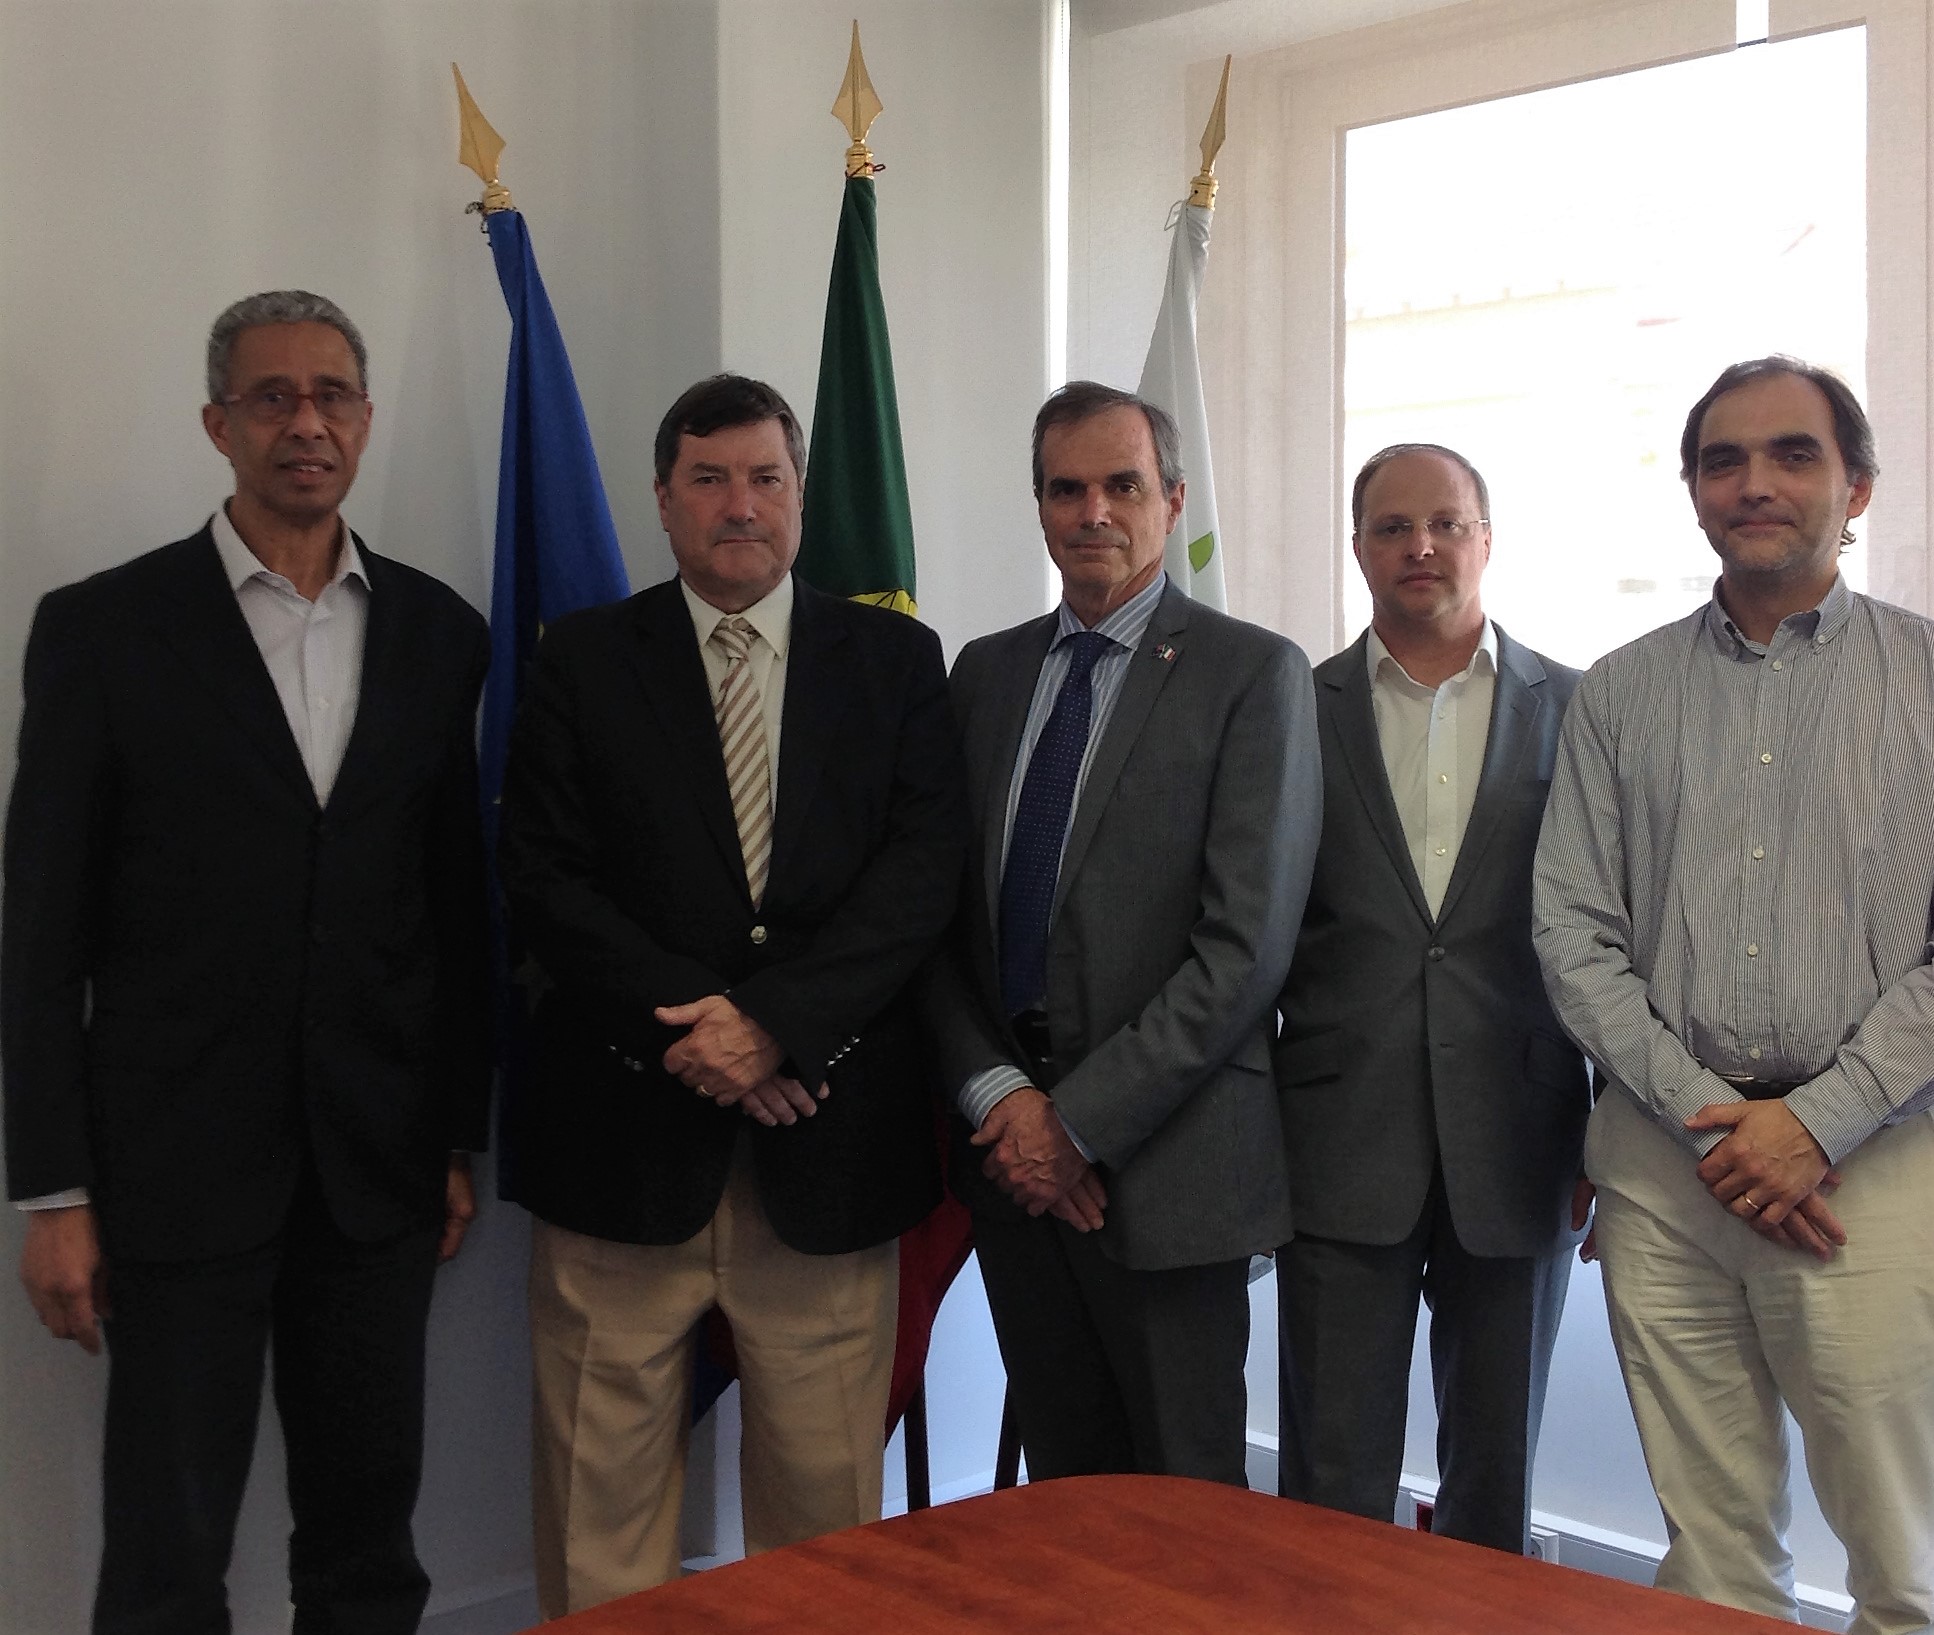 Warwick Forbes – Head of AIS Europe visita CAR do Jamor, Rio Maior e Montemor-o-Velho